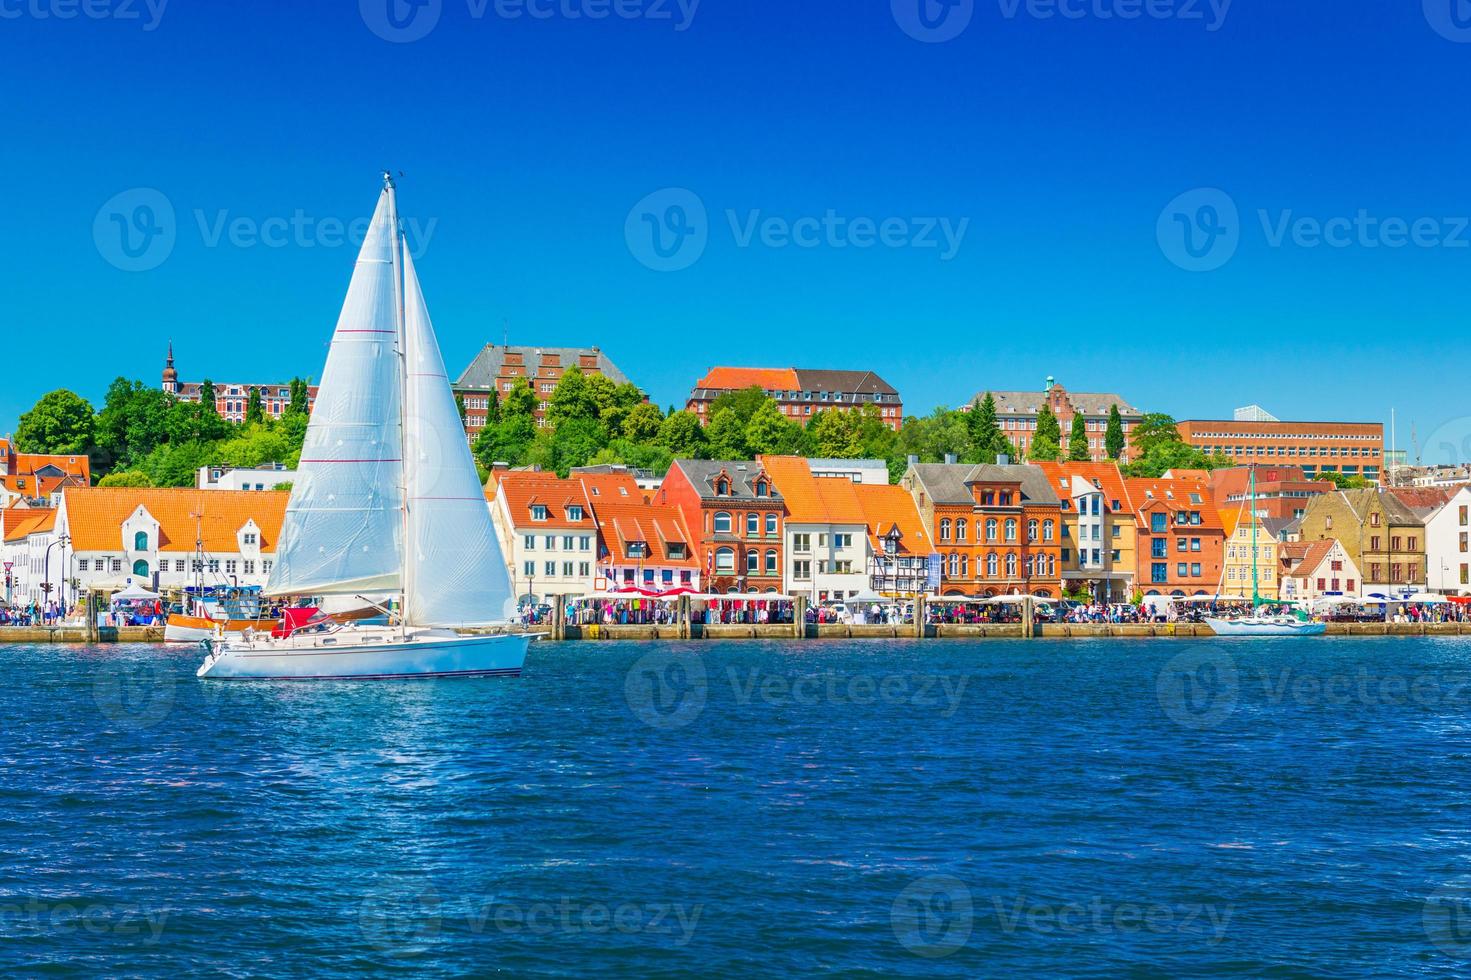 bellissimo panorama di una città portuale europea. uno yacht sta navigando contro lo skyline della città di flensburg, in germania foto